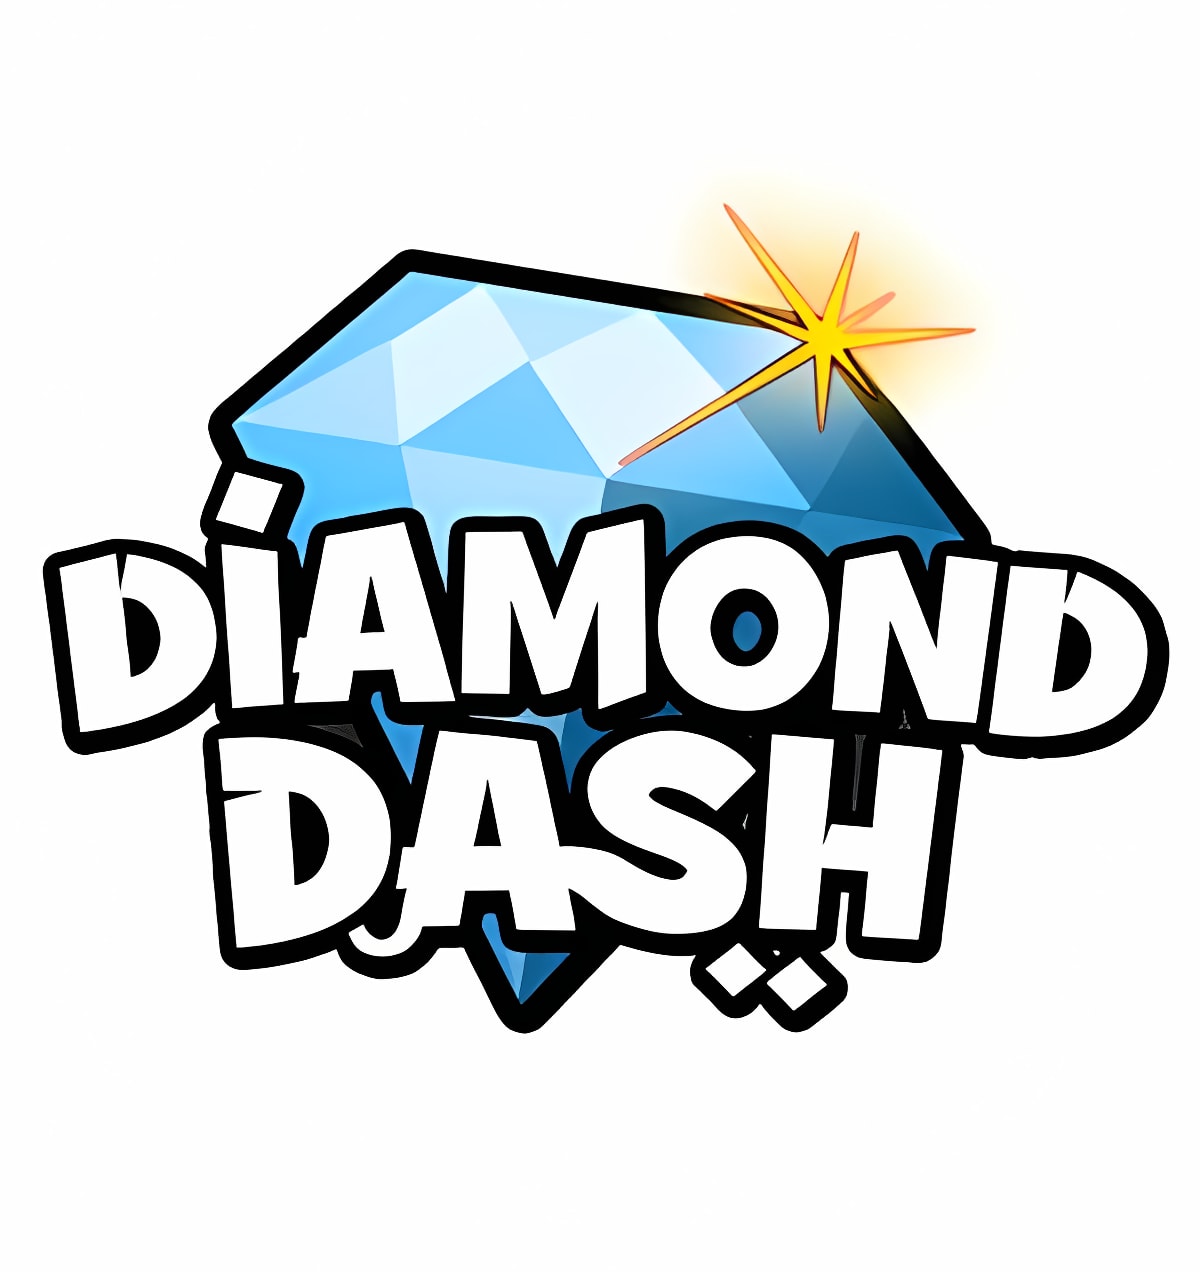 diamond rush download for blackberry